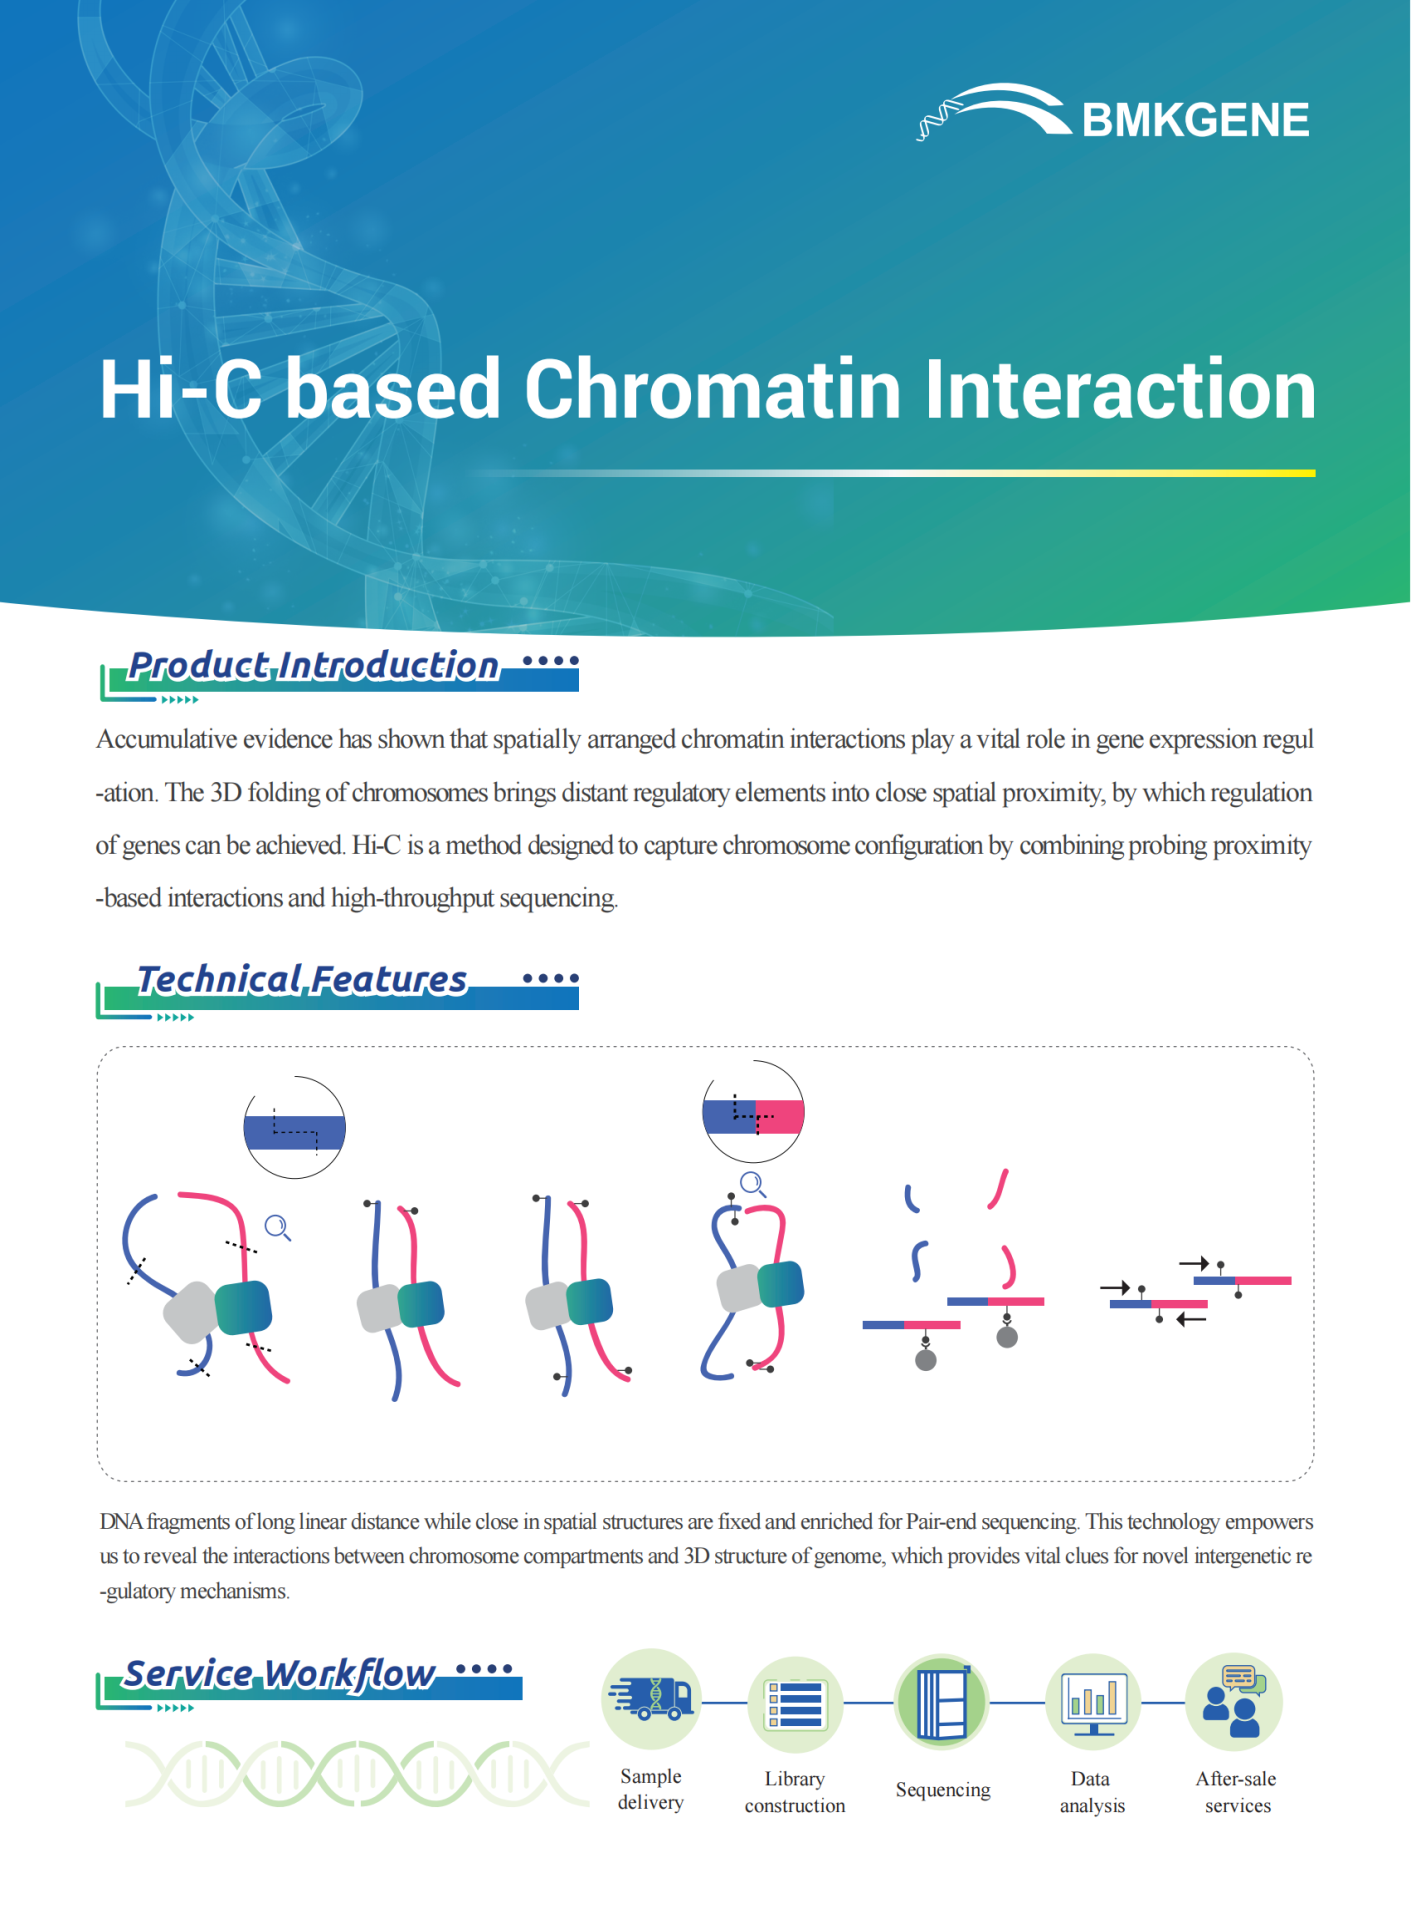 https://www.bmkgene.com/uploads/Hi-C-based-Chromatin-Interaction-BMKGENE-2023.123.pdf